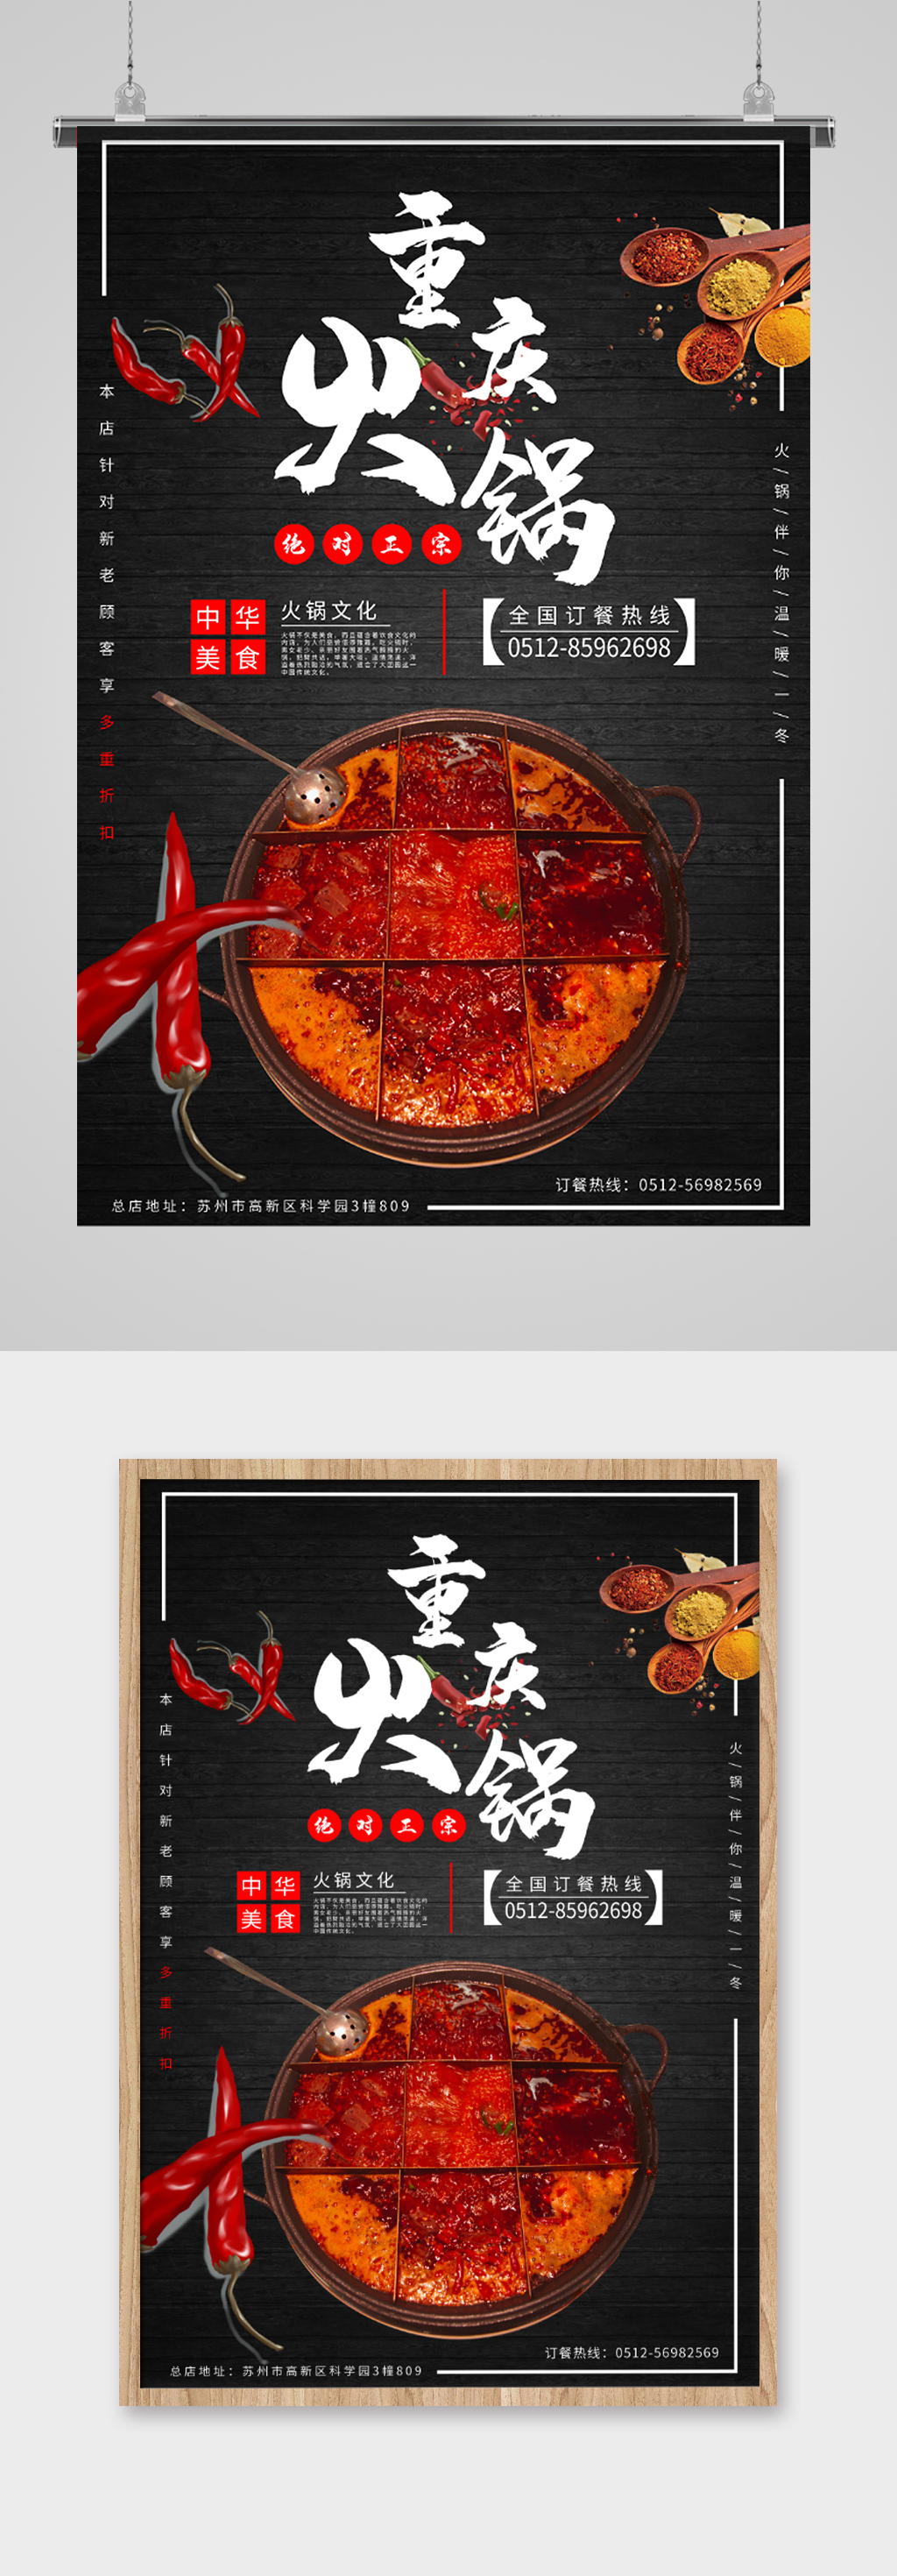 重庆火锅文化宣传海报图片